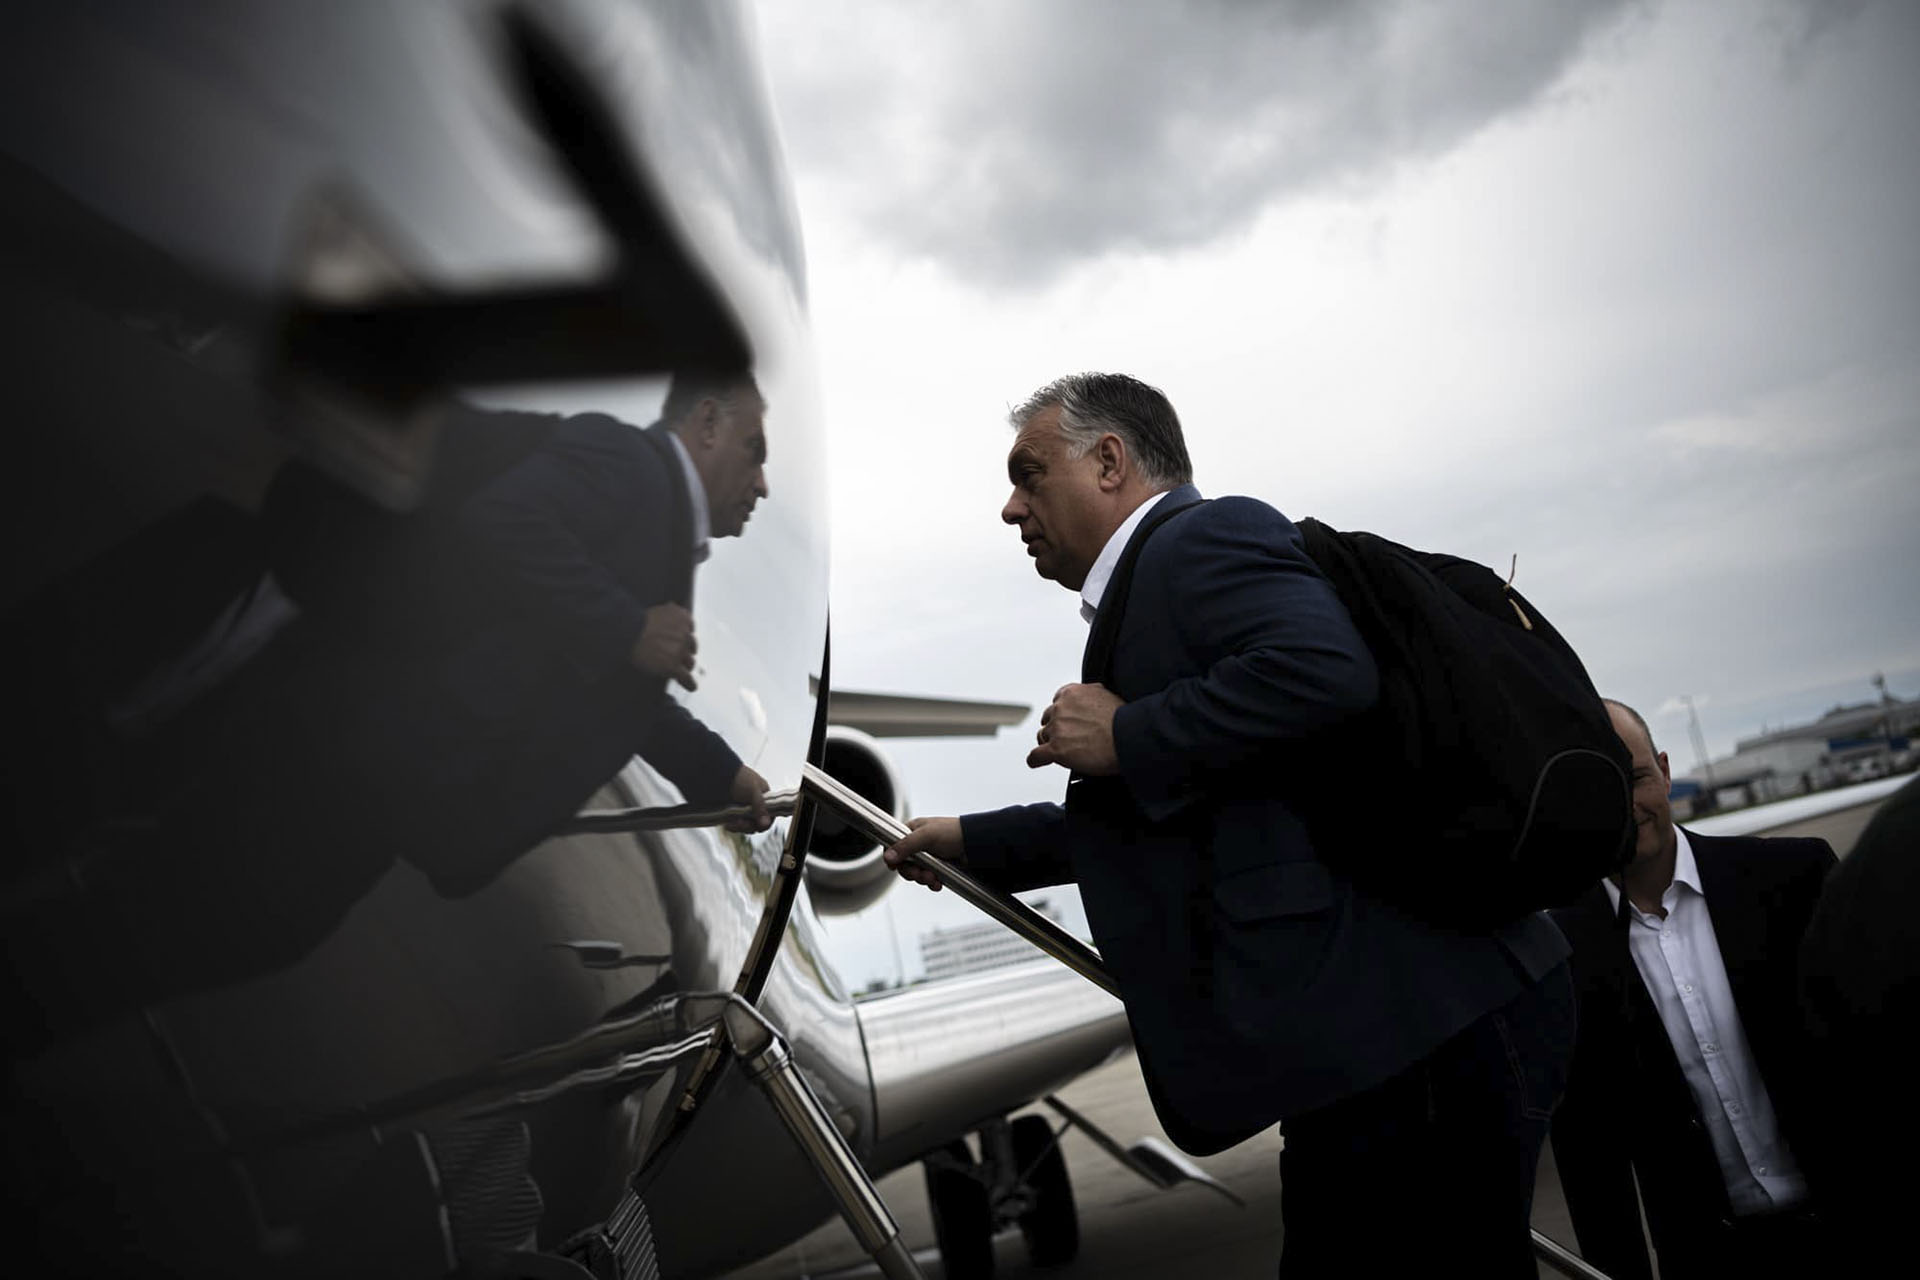 Senki sem tudja és tudhatja, hogy mennyiért repülnek Orbánék